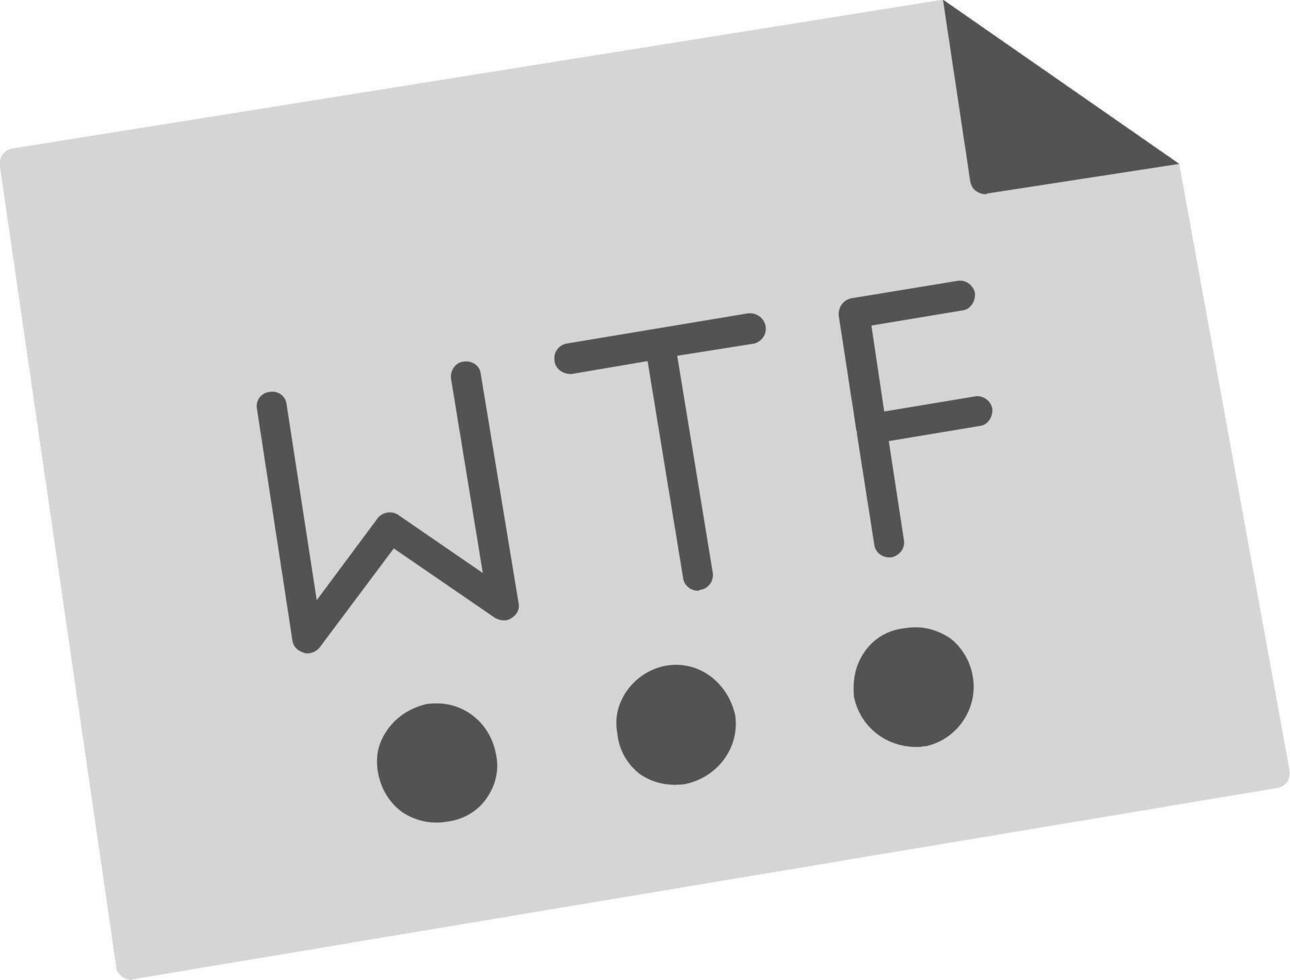 wtf vetor ícone